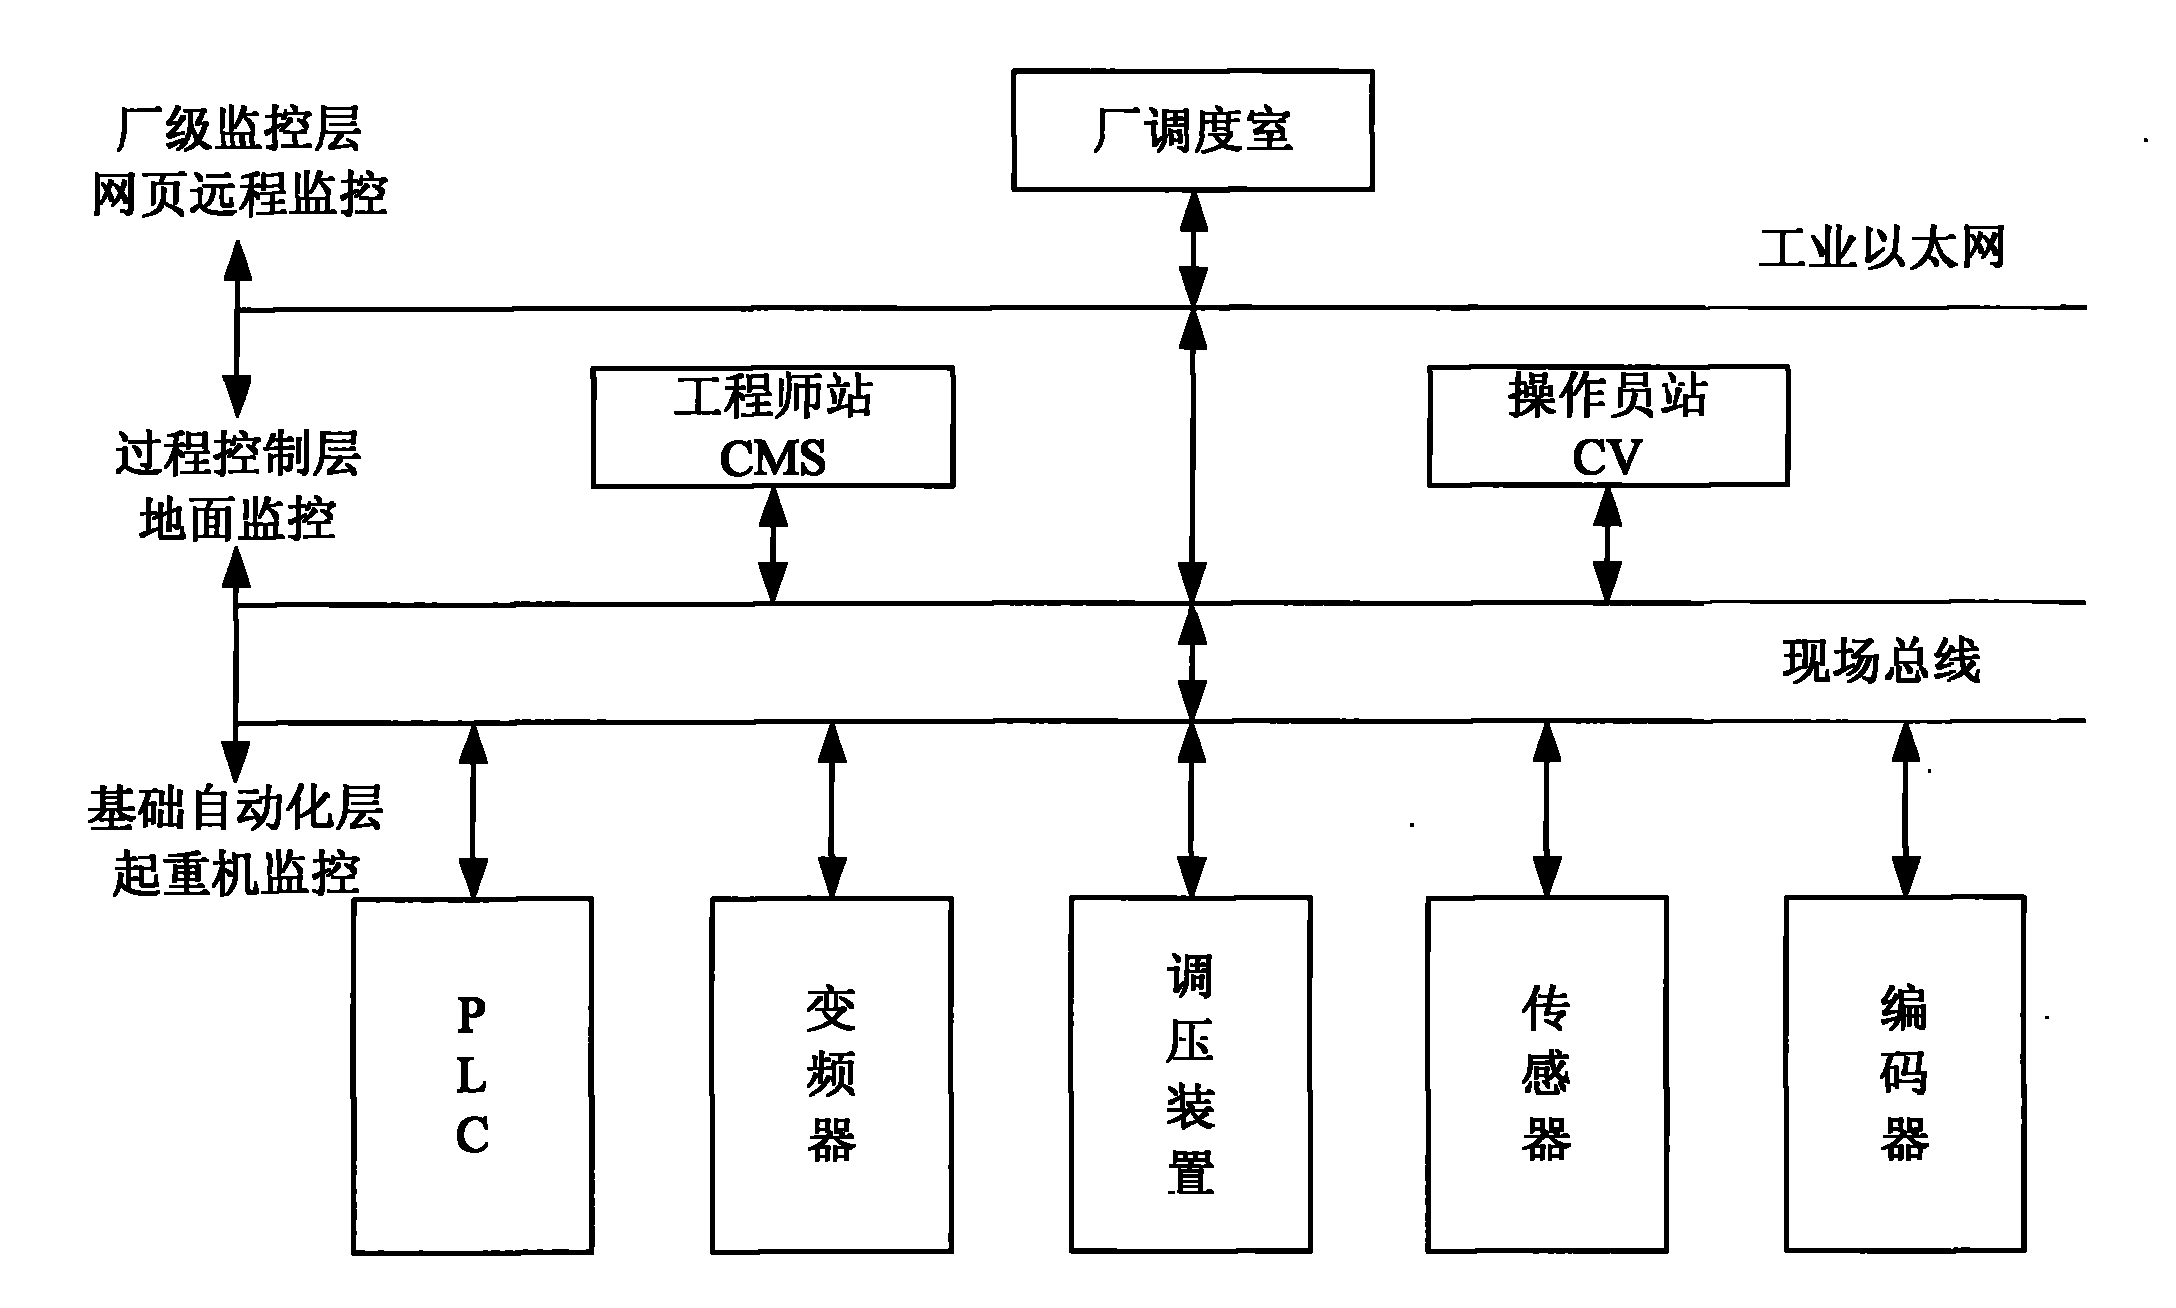 Information management system of crane